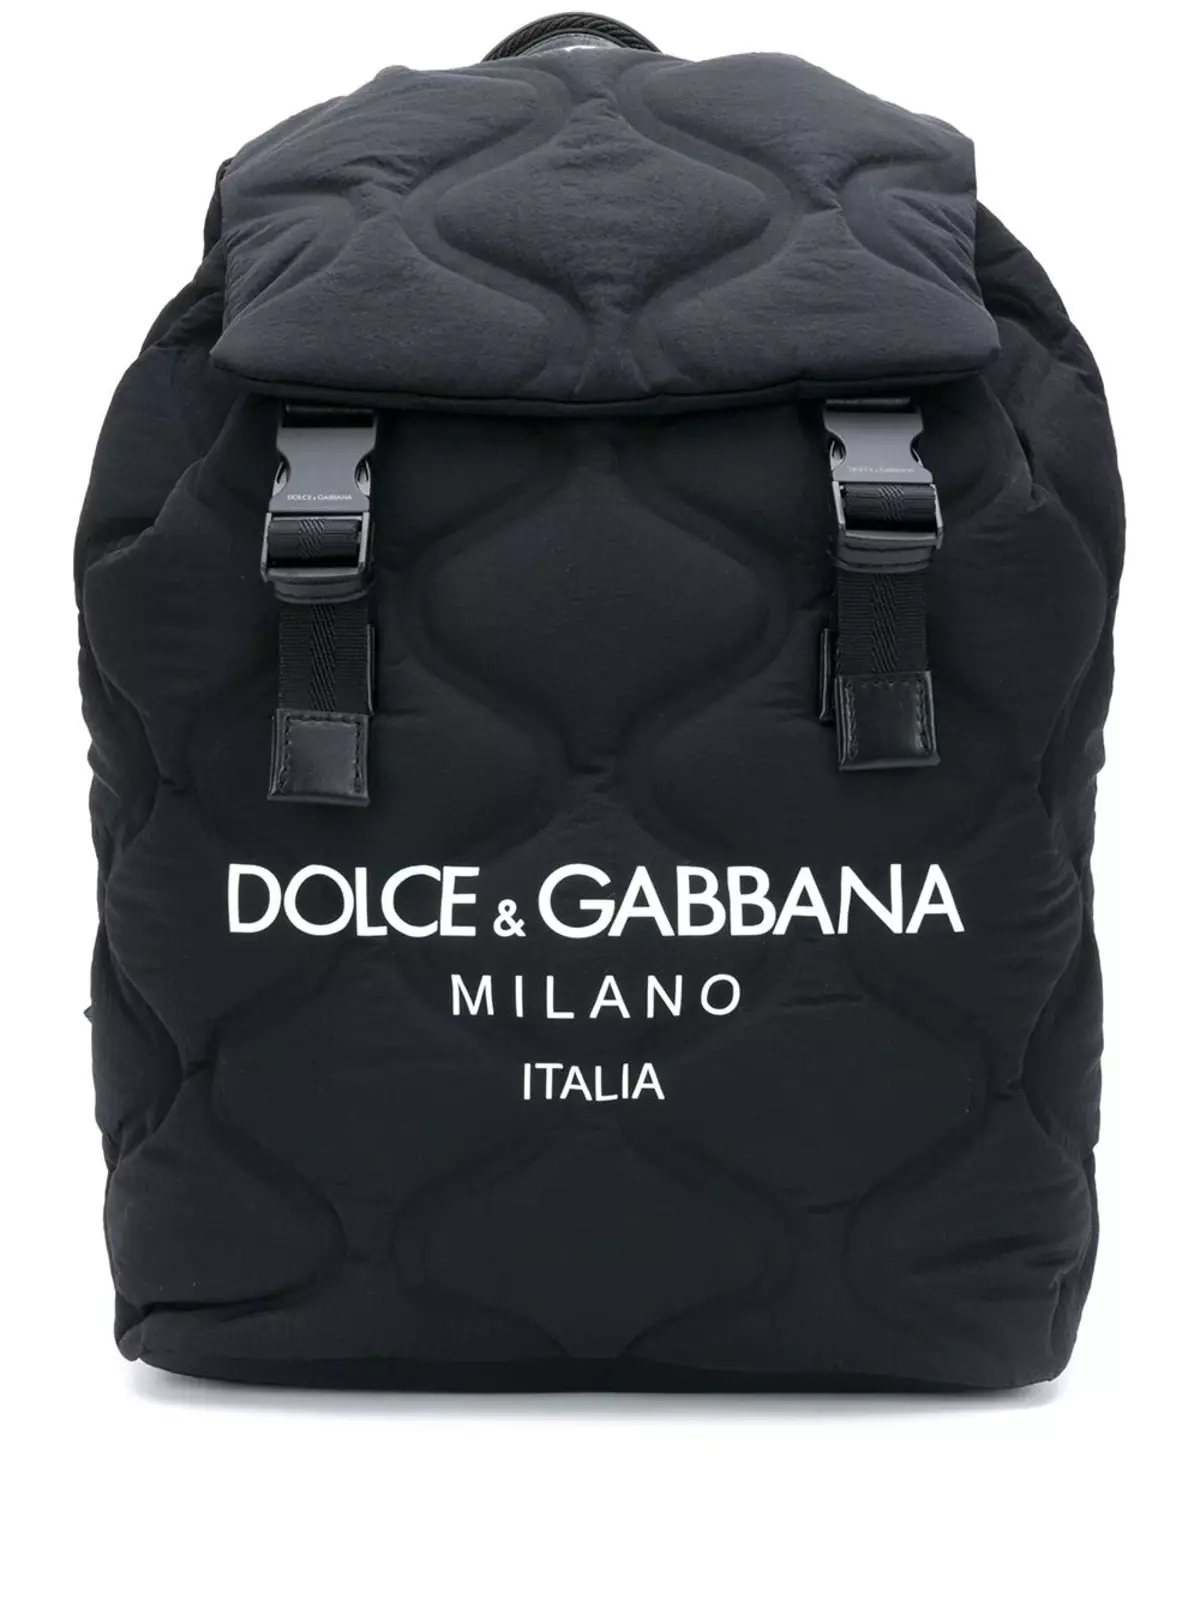 Dolce & Gabbana Nahrbtniki: Ženska in moška, ​​črna in rdeča, usnjeni nahrbtniki torbe in drugi modeli. Kako razlikovati izvirnik iz kopije? 2559_32